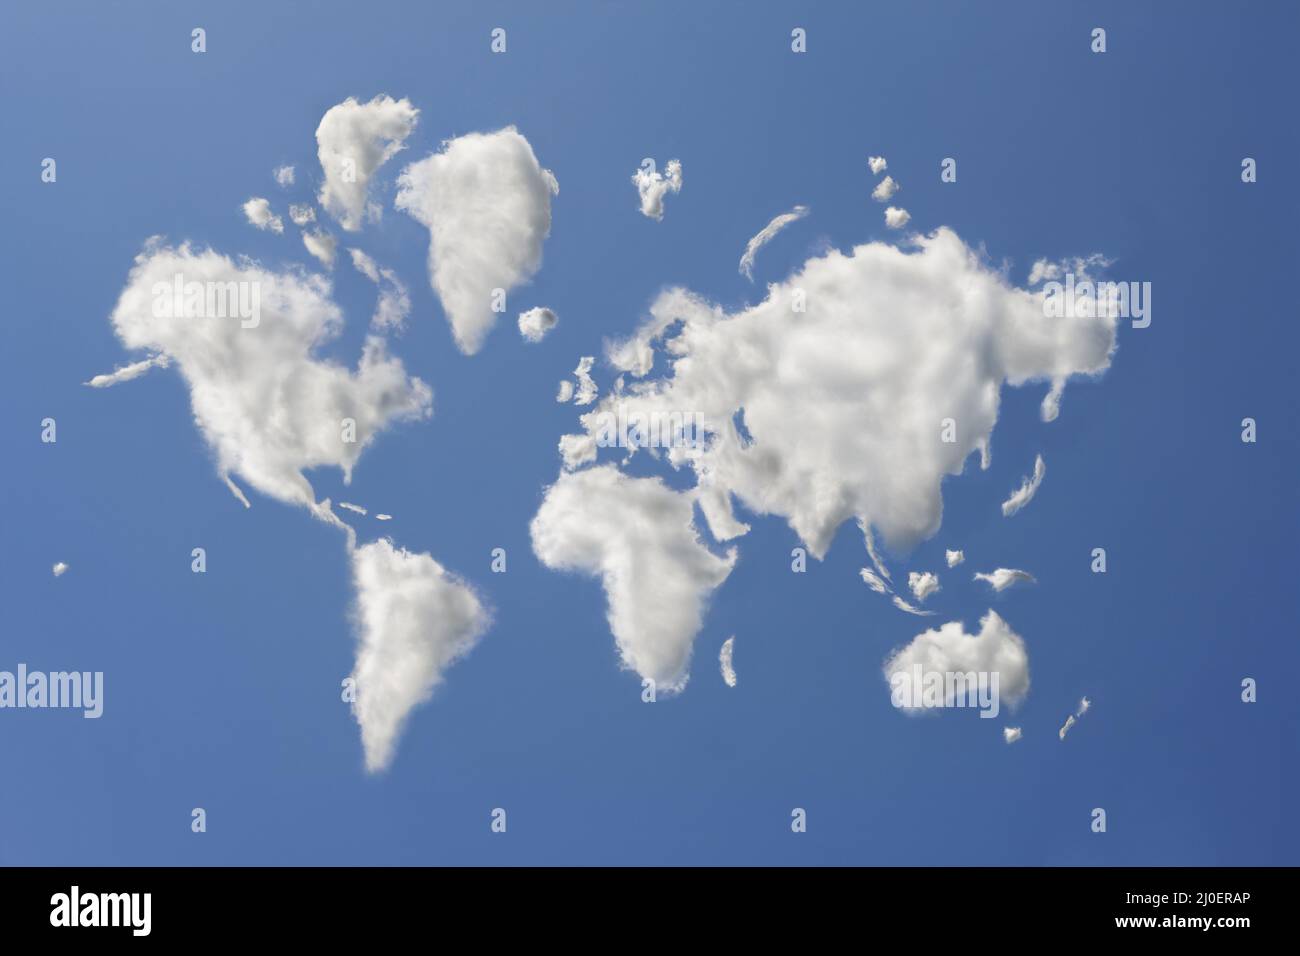 Composito digitale di un assortimento di nuvole che hanno formato la forma del mondo Foto Stock